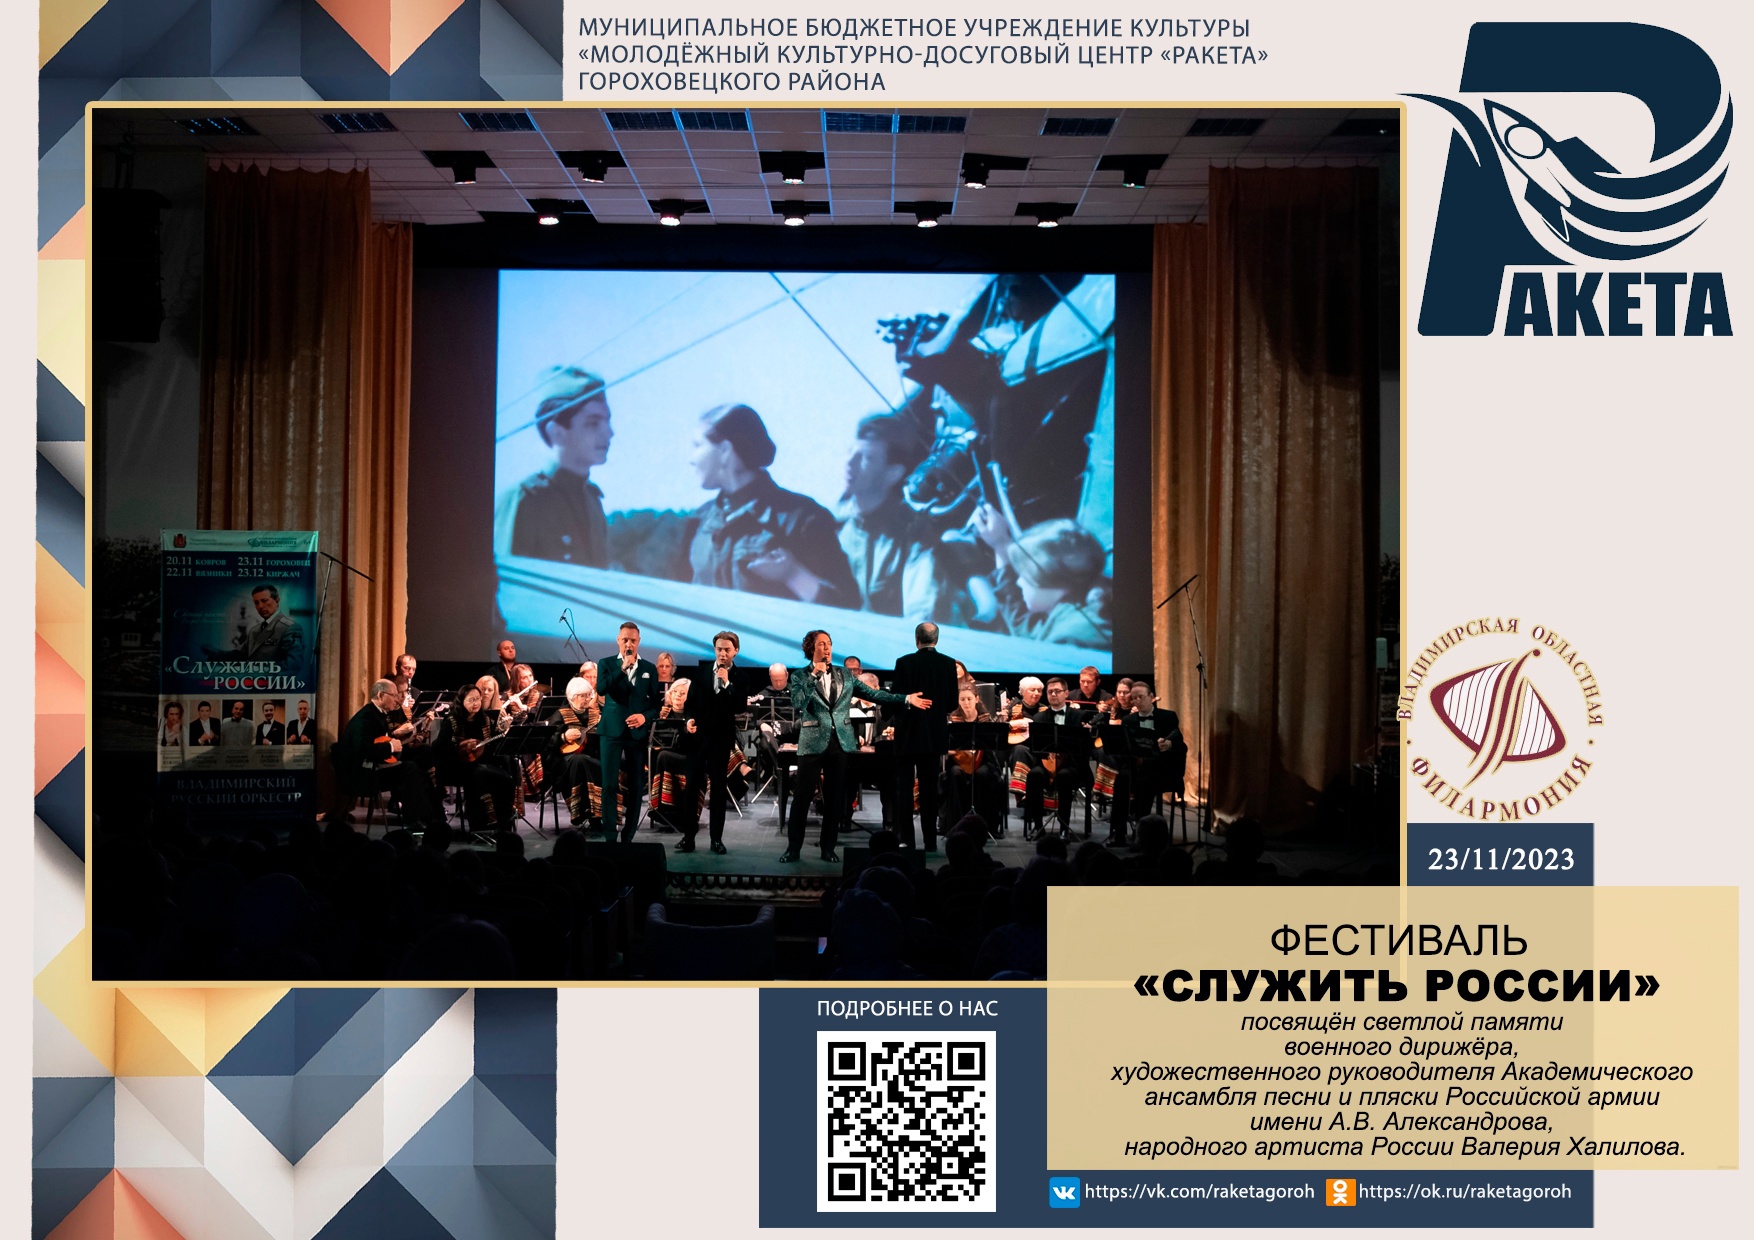 Владимирская областная филармония при поддержке регионального Министерства культуры проводит фестиваль «Служить России».